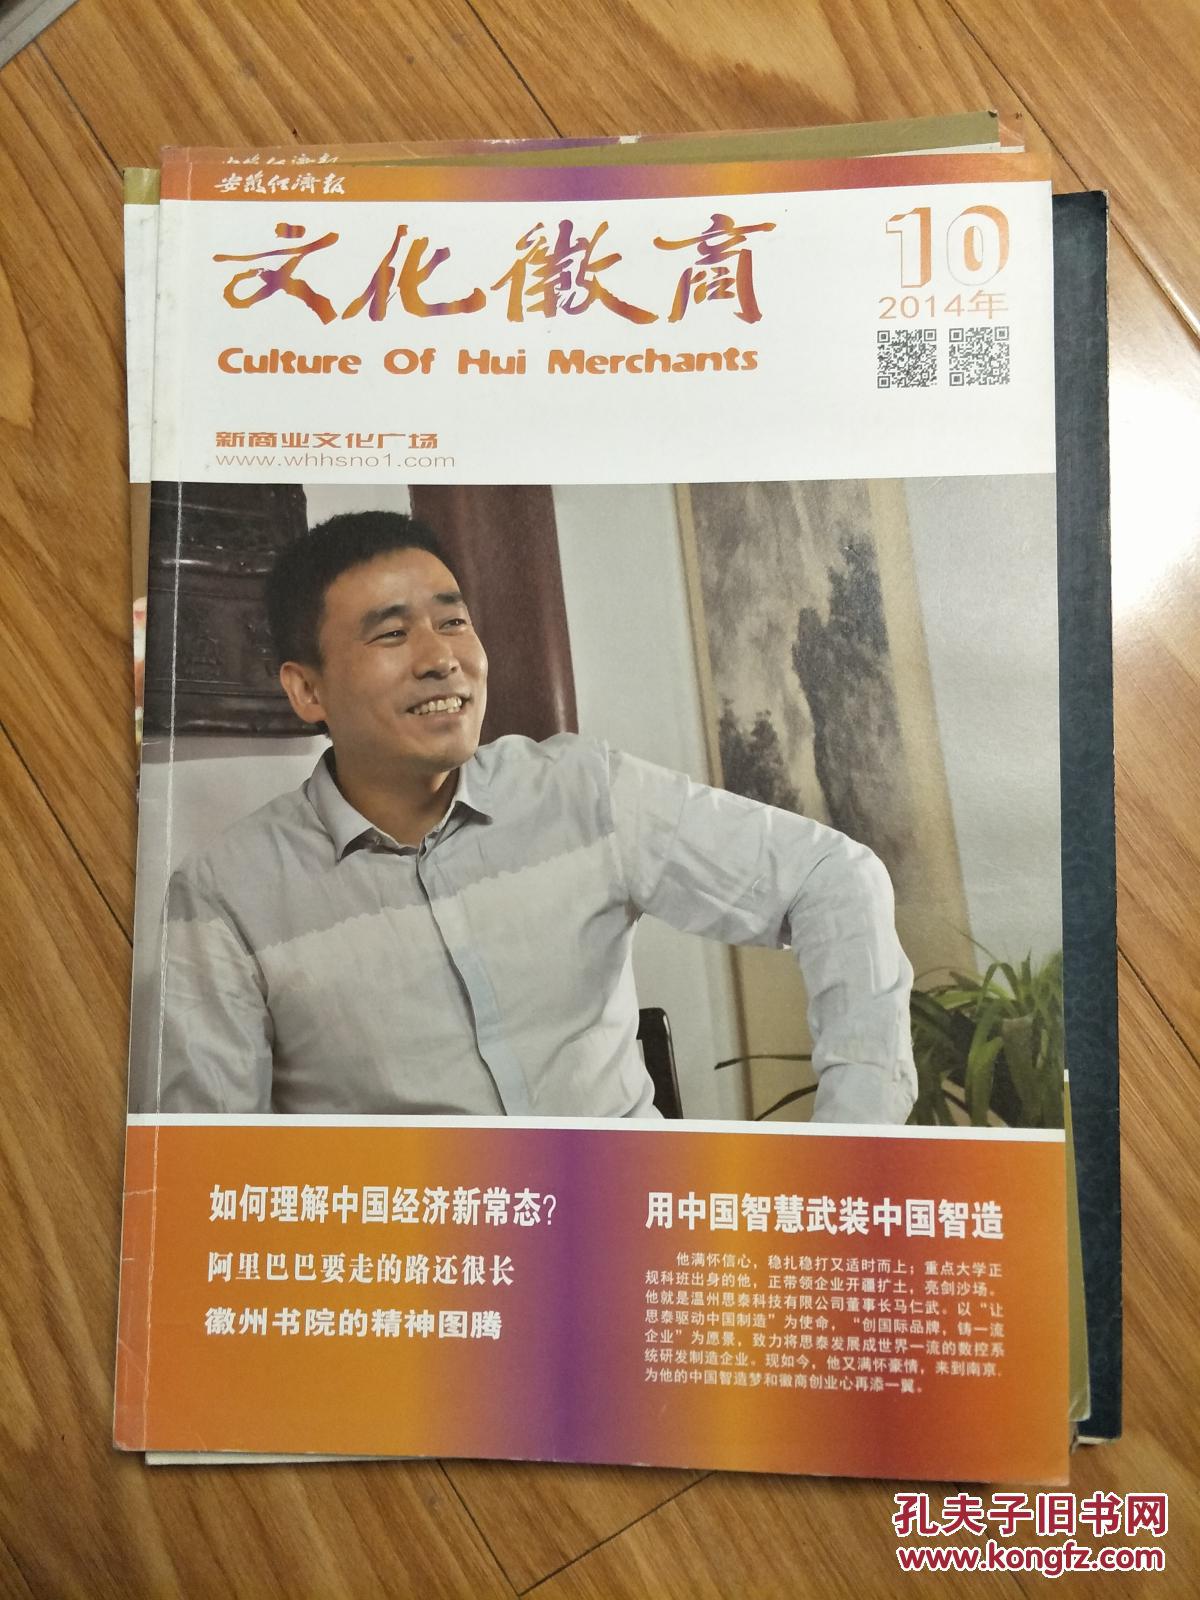 《文化徽商》201410，温州思泰科技有限公司马仁武专题，8开大本！